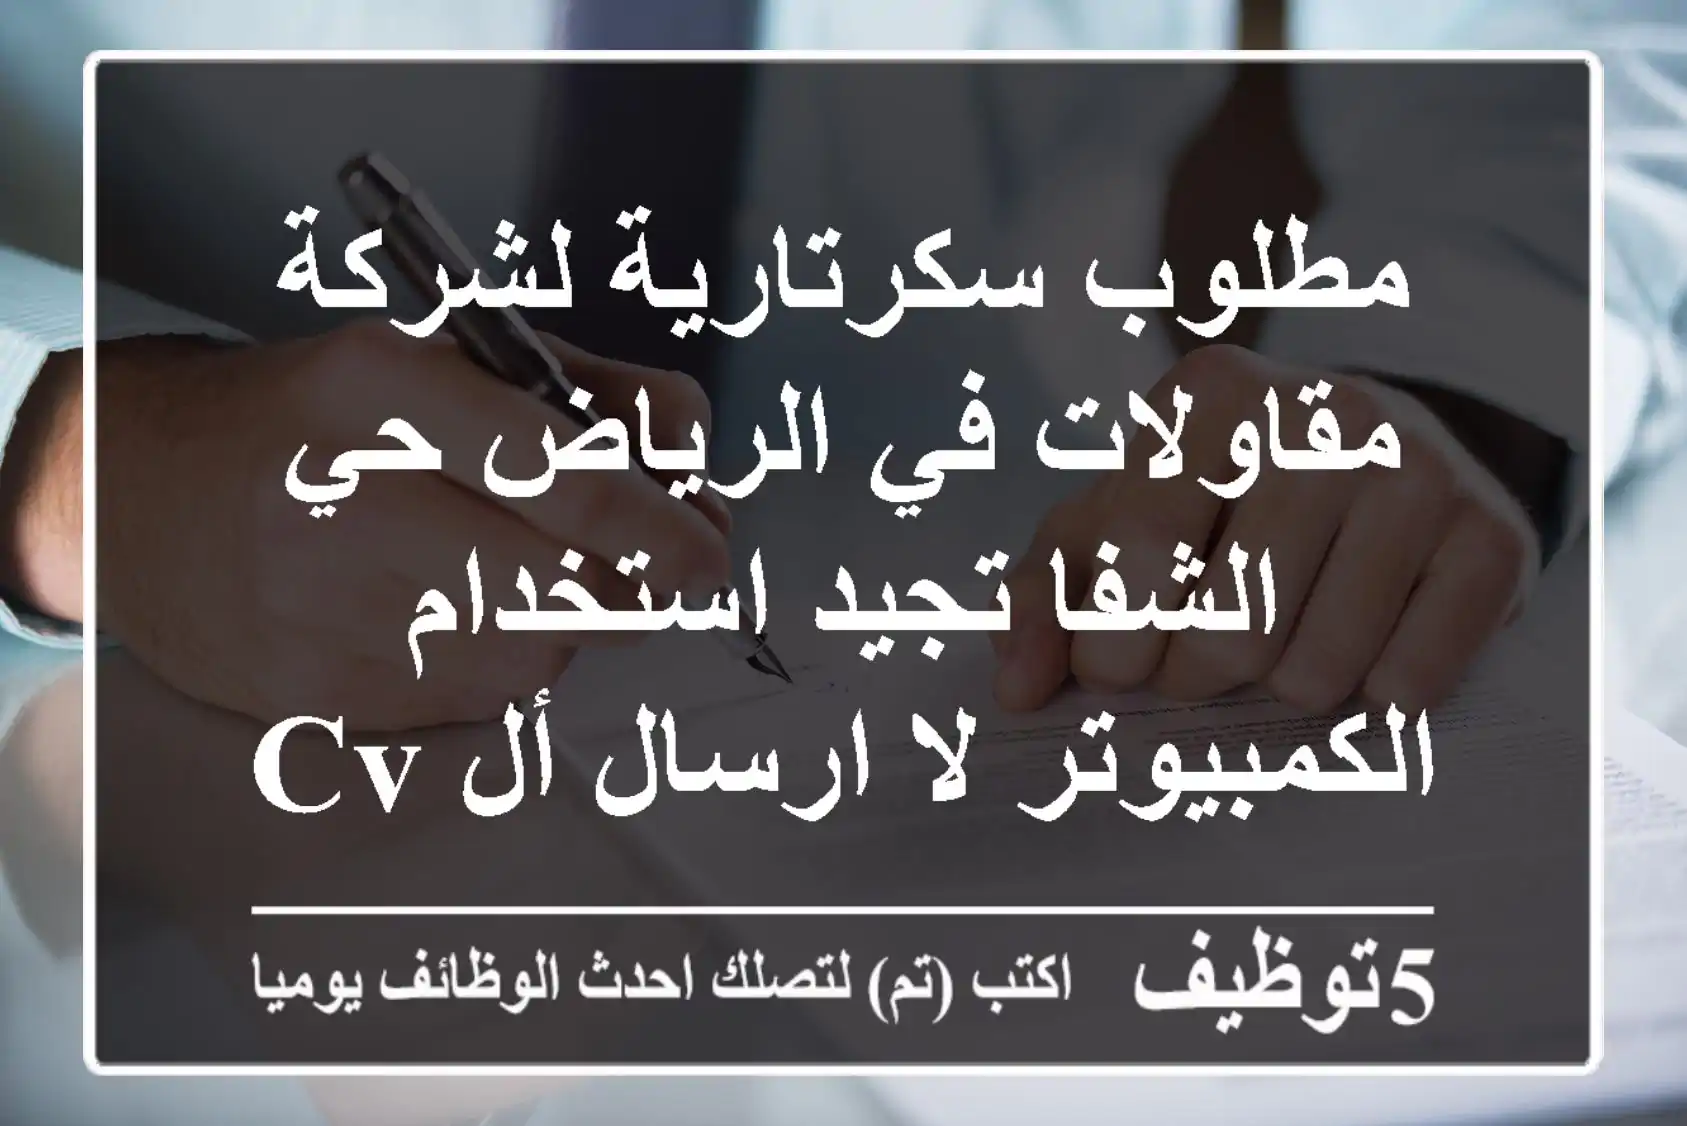 مطلوب سكرتارية لشركة مقاولات في الرياض حي الشفا تجيد استخدام الكمبيوتر لا ارسال أل CV